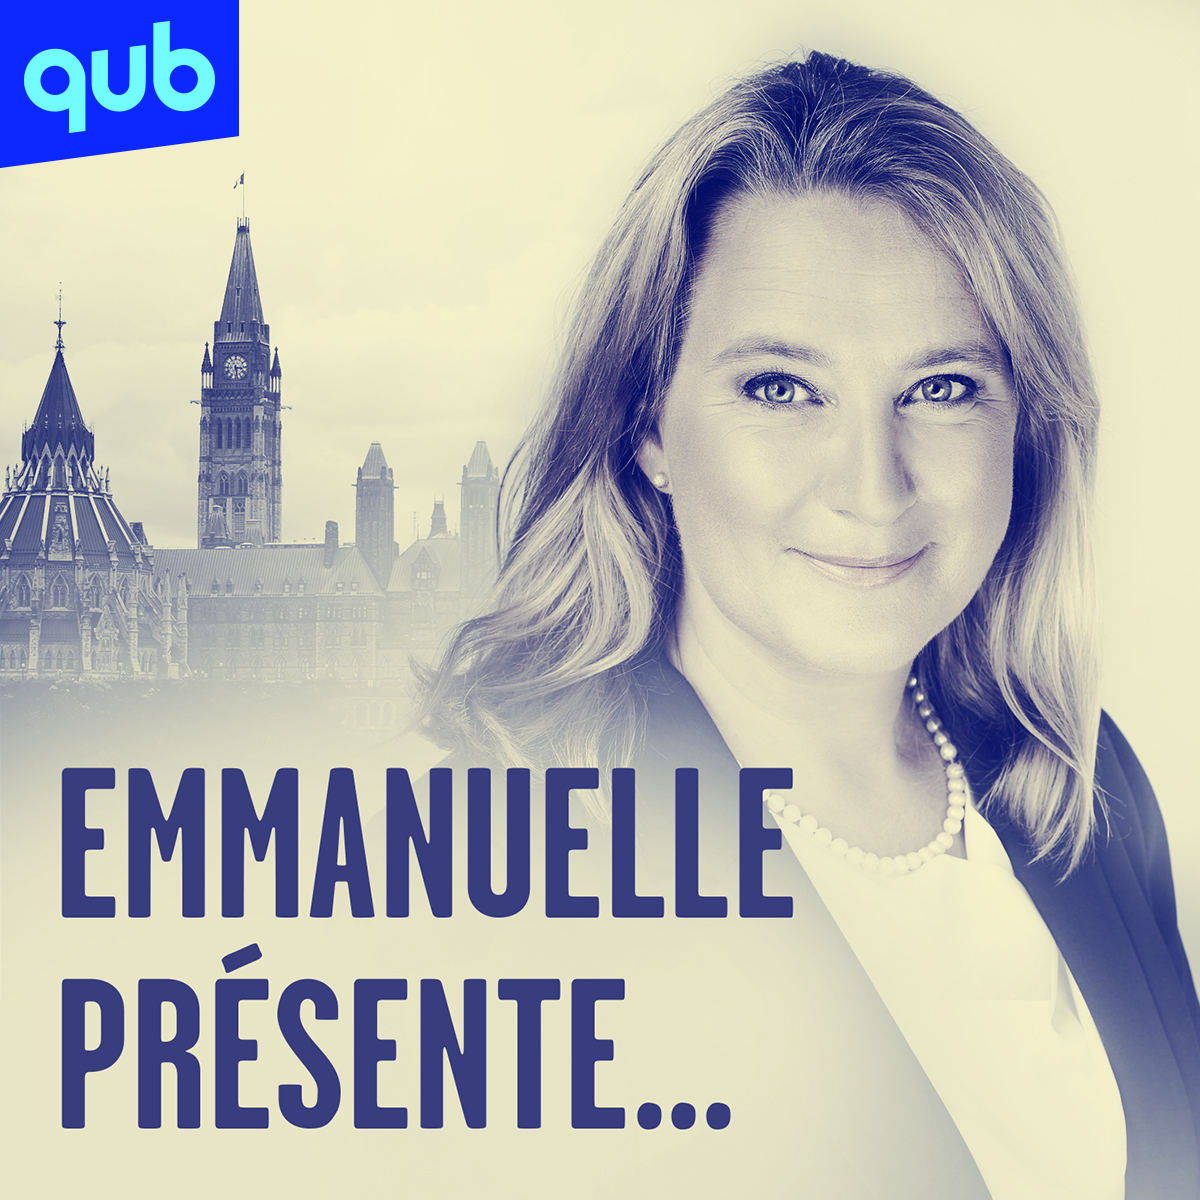 Le maire de Québec: Régis Labeaume